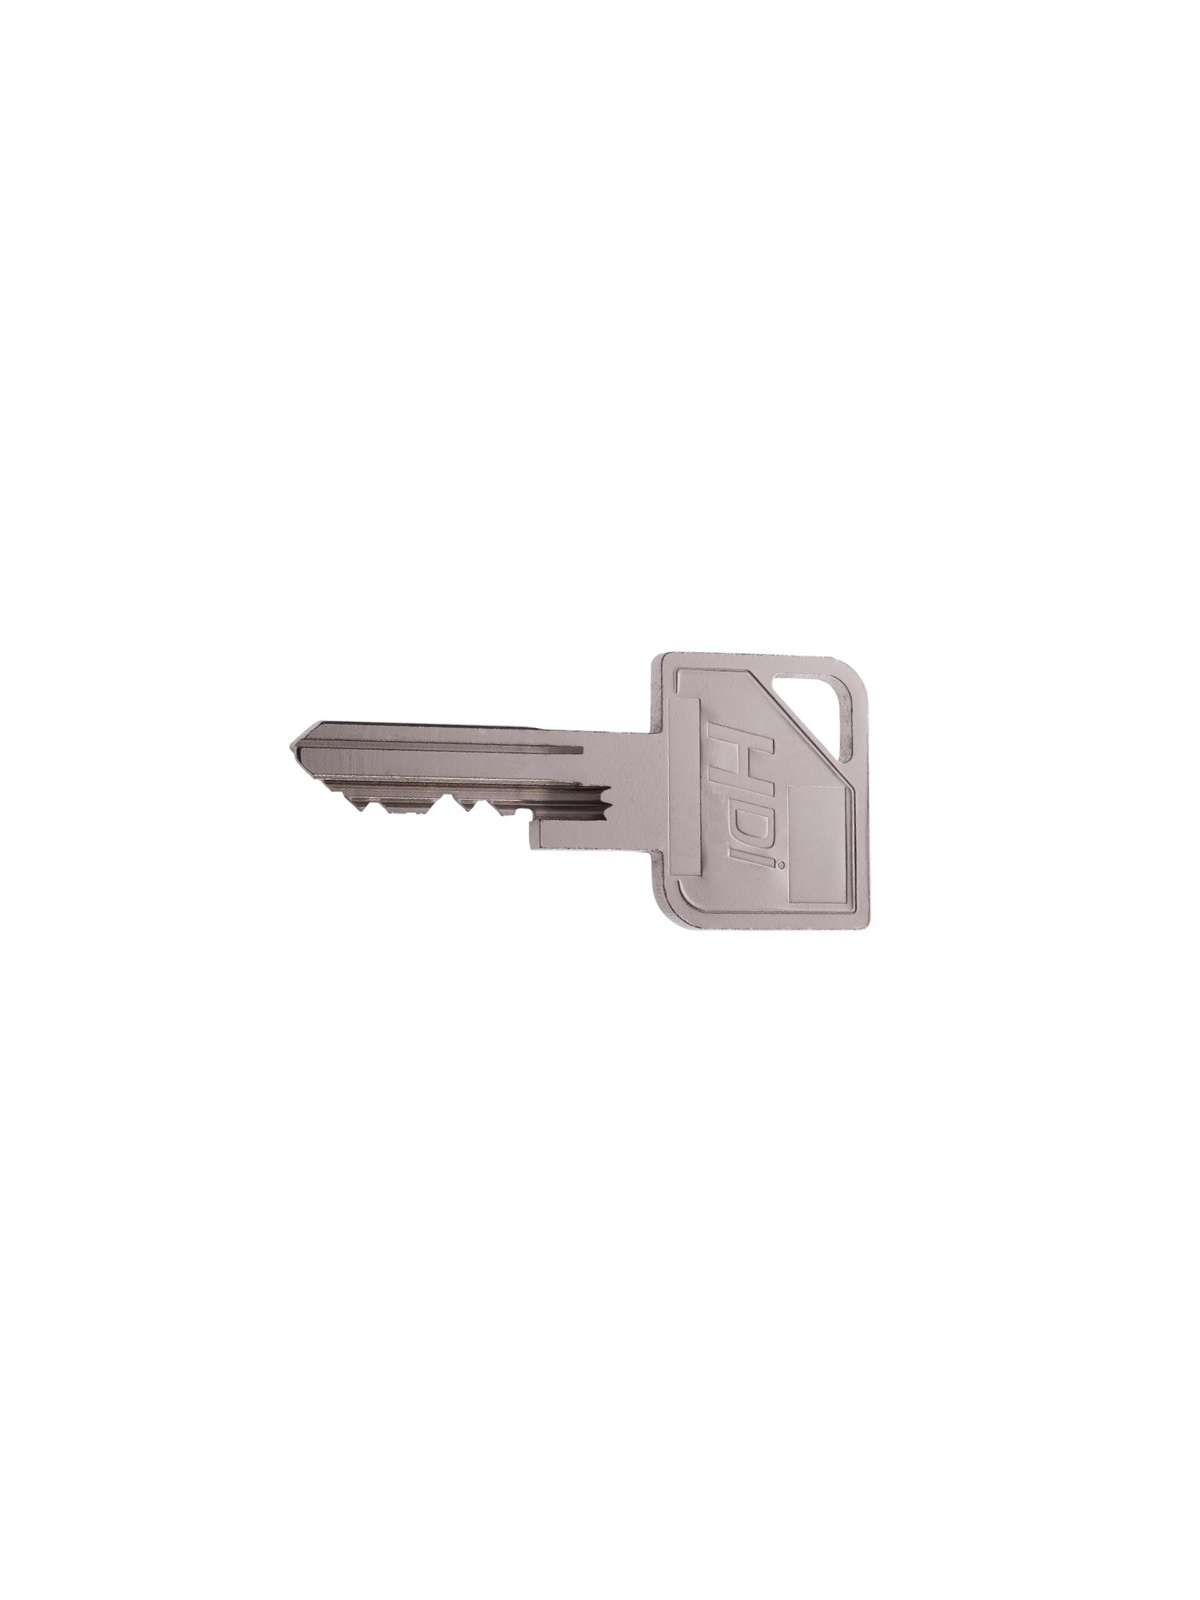 Clé Vachette HDI - Clé supplémentaire : clé sans cylindre avec numéro de carte code